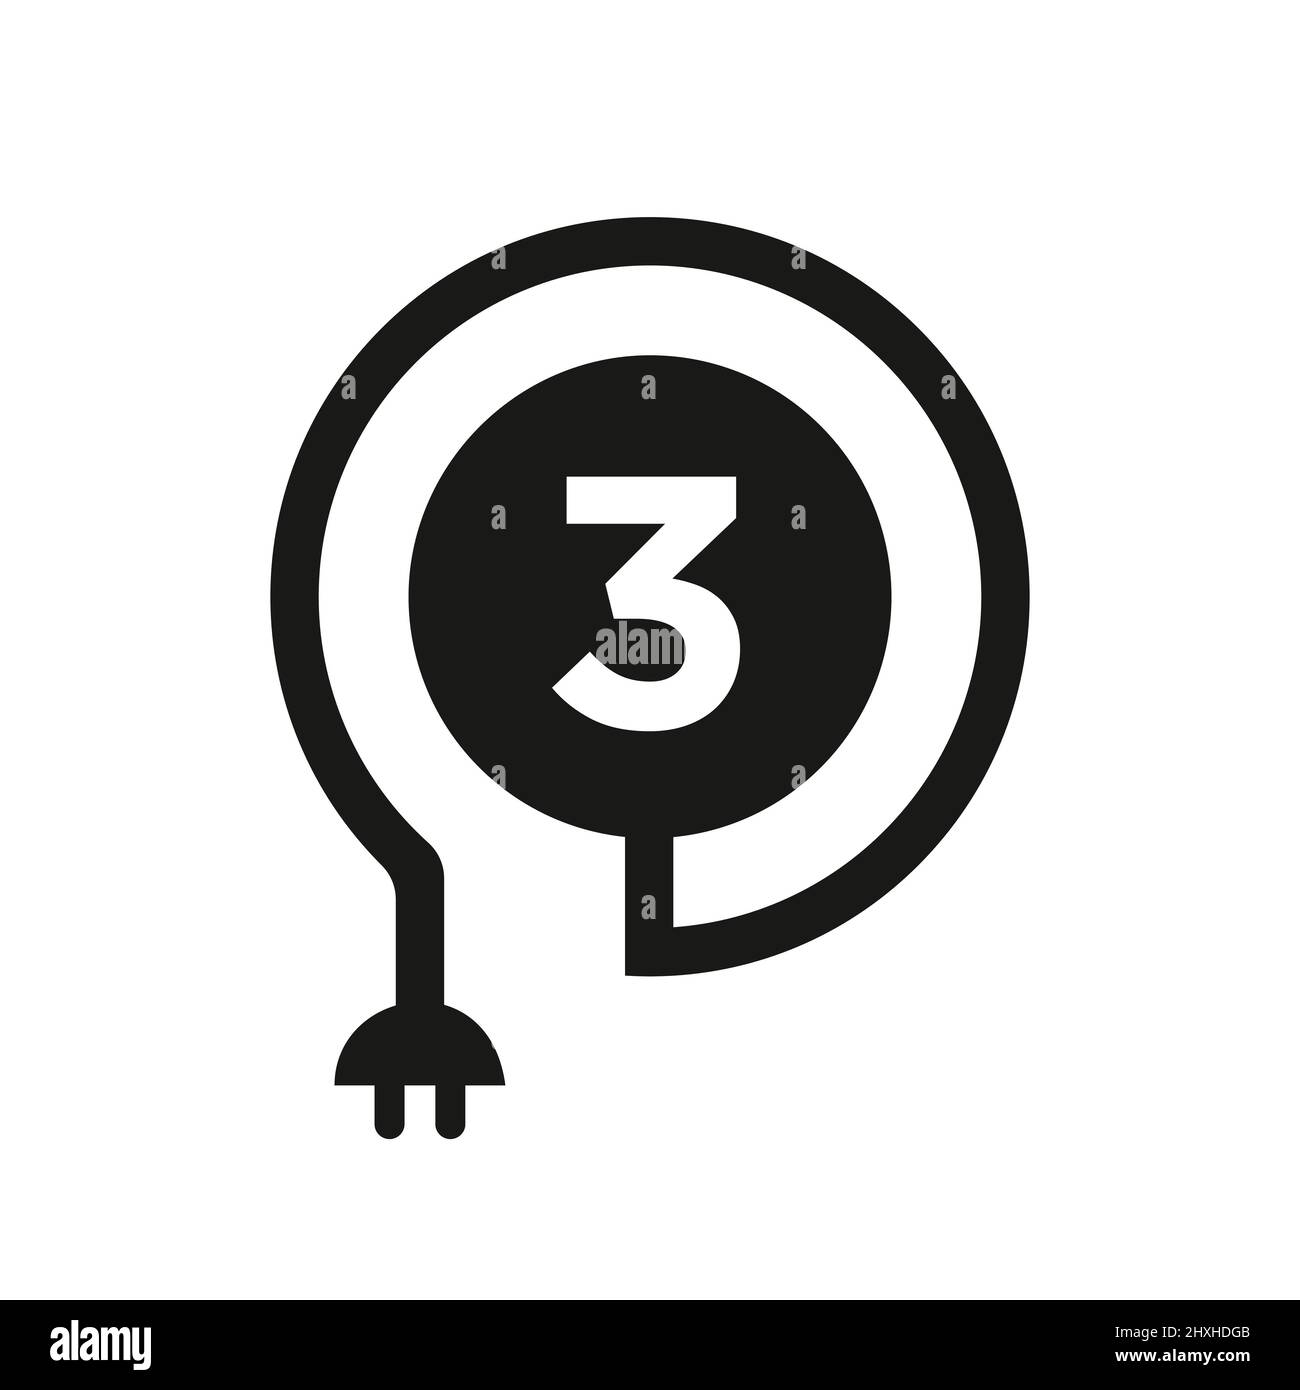 Elektrisches Logo Auf Buchstabe 3 Zeichen. 3 Buchstabe Logo mit Curl-Kabel und Steckeradapter, Elektrizität, Industrie und Technologie Vektor-Vorlage Stock Vektor